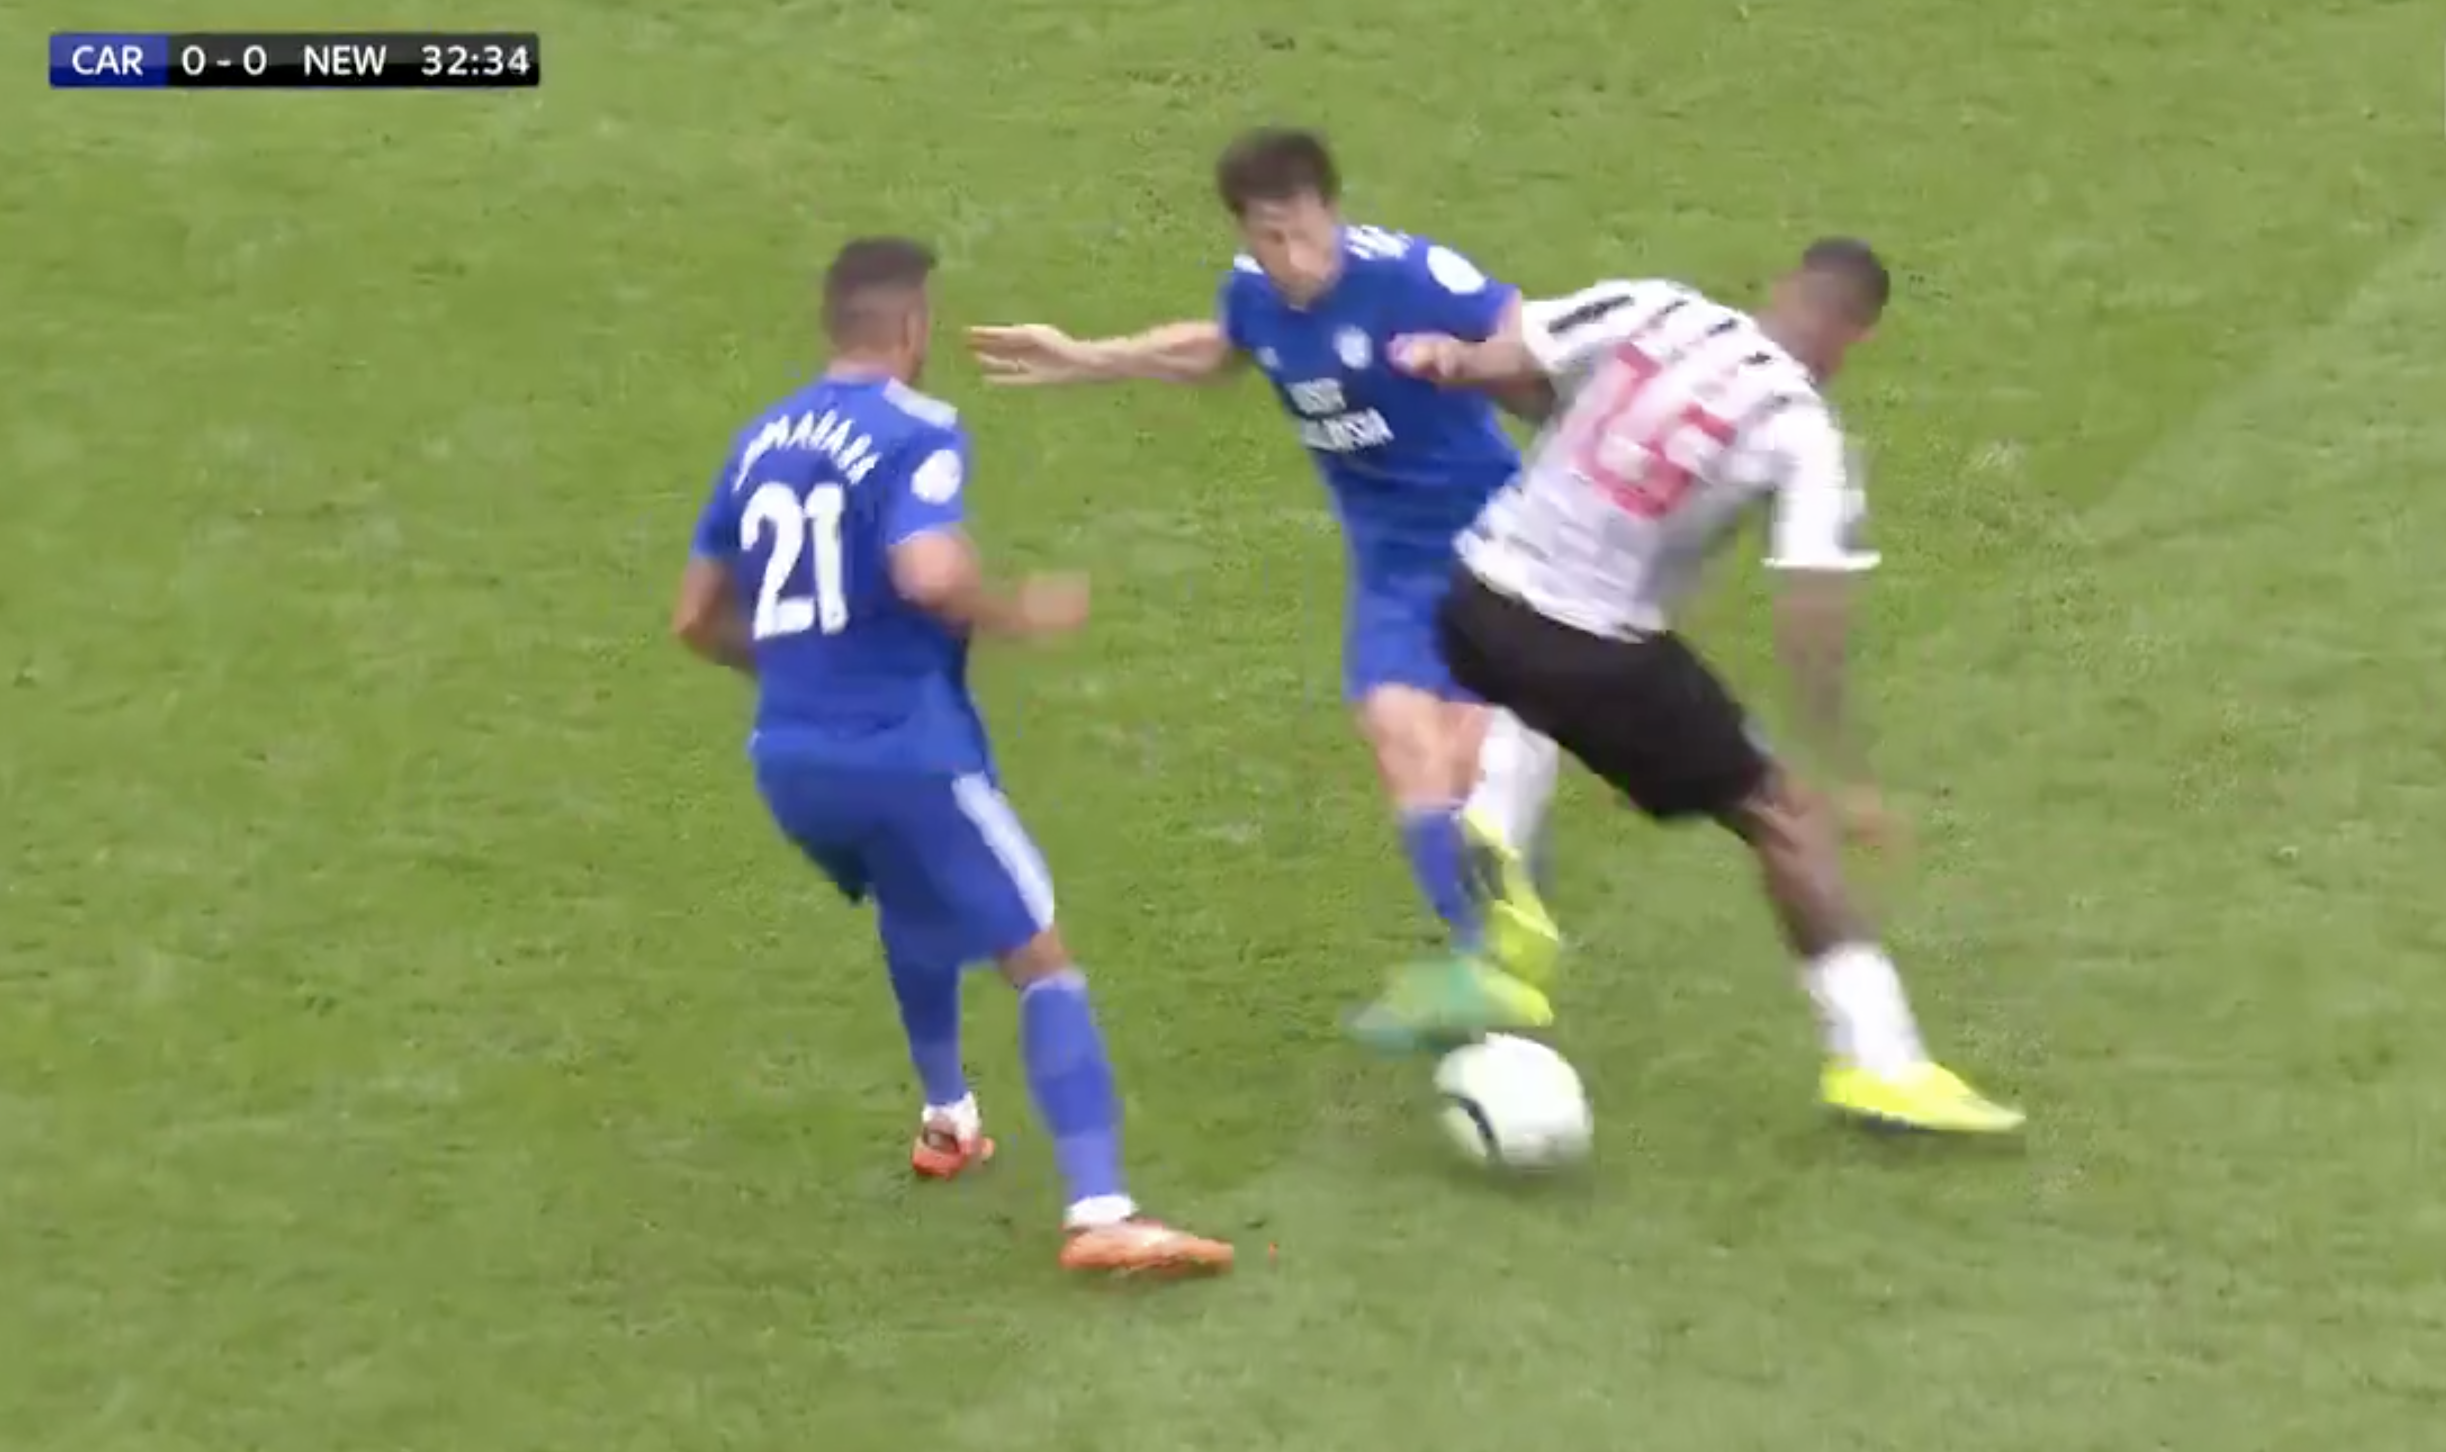 Skuffelse en gang Bliv såret Newcastle's Kenedy escapes a red card for blatant kick at Víctor Camarasa -  JOE.co.uk